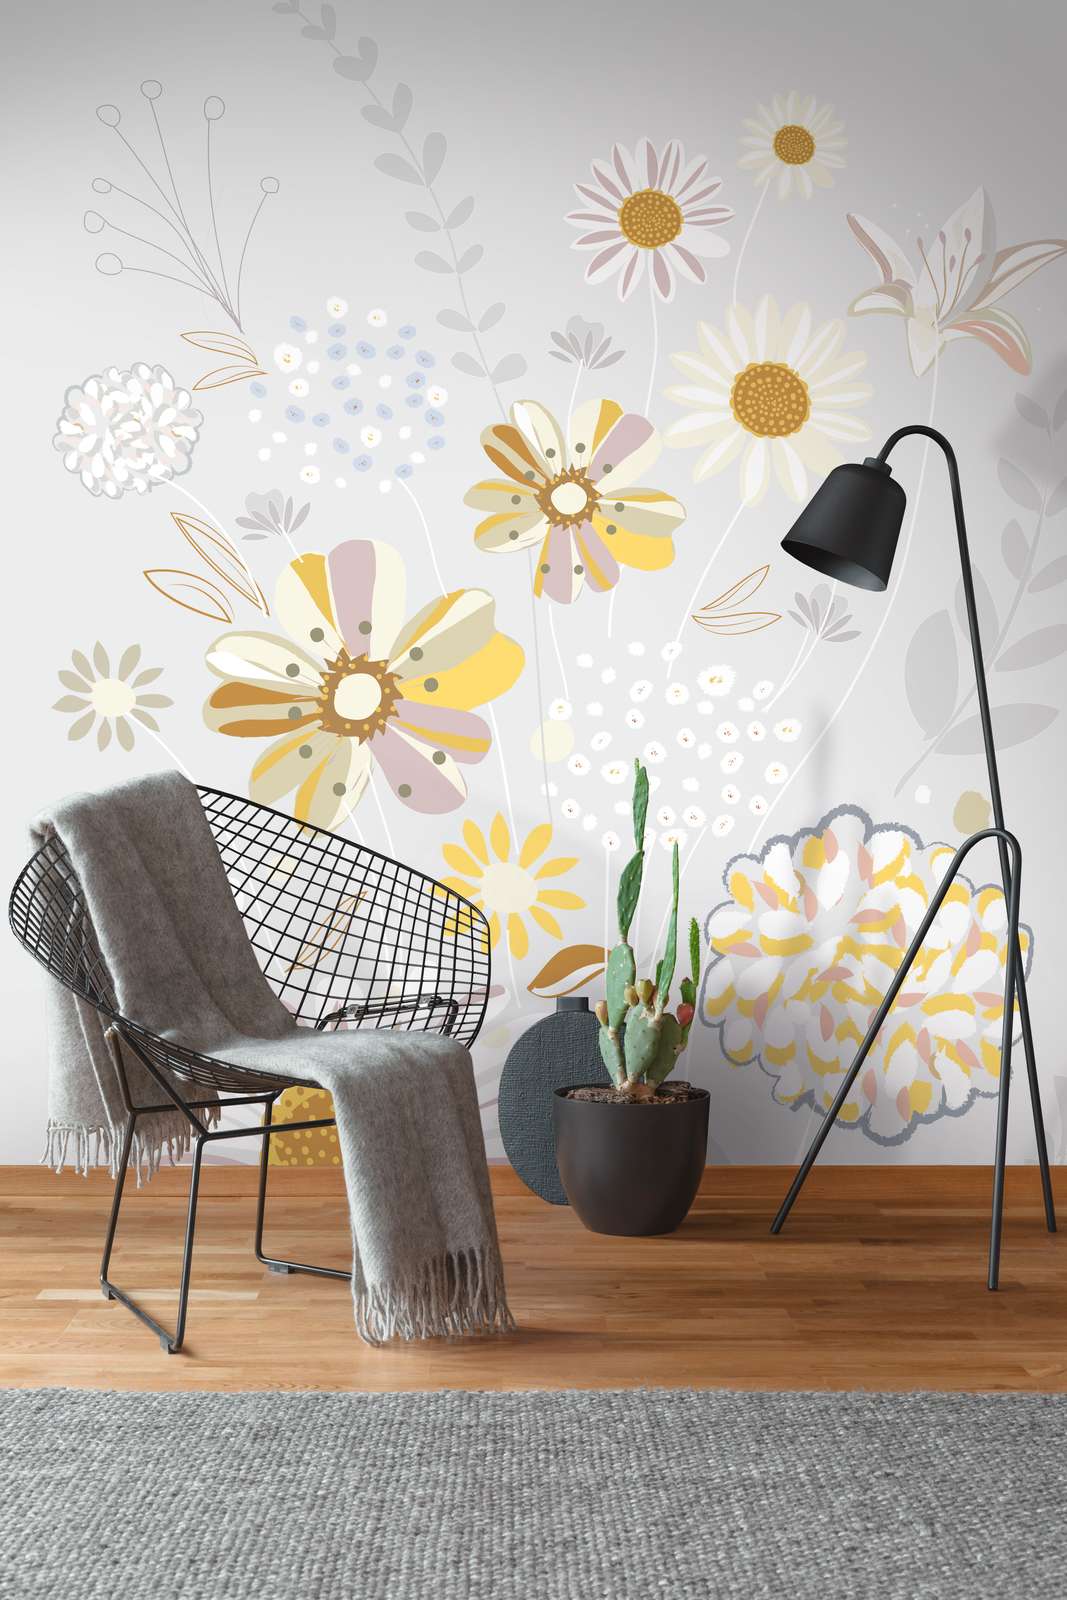             Papel pintado con motivos florales de gramíneas en colores claros - gris, amarillo, beige
        